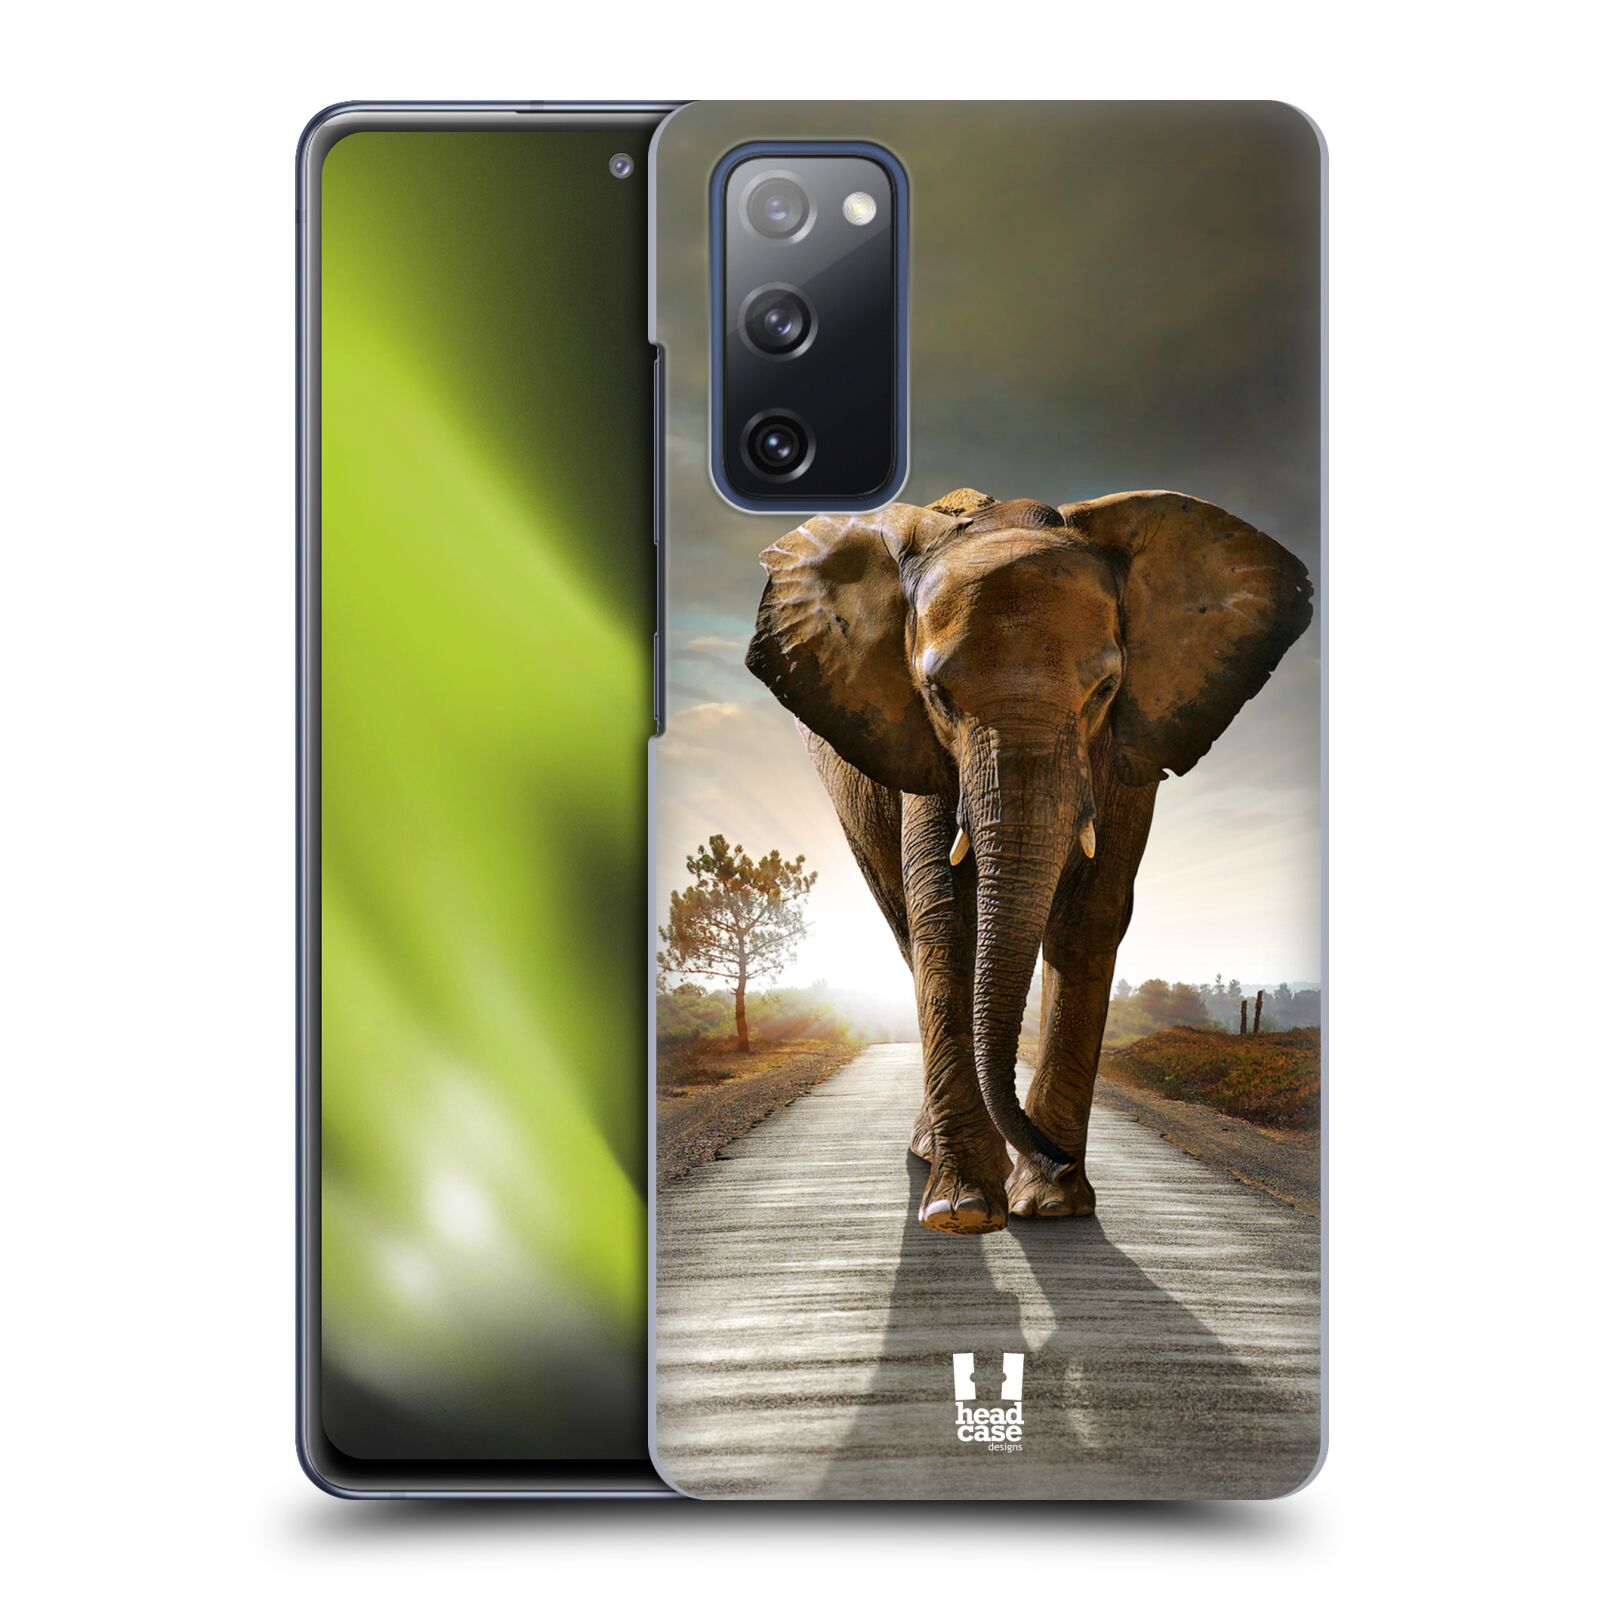 Zadní obal pro mobil Samsung Galaxy S20 FE / S20 FE 5G - HEAD CASE - Svět zvířat kráčející slon